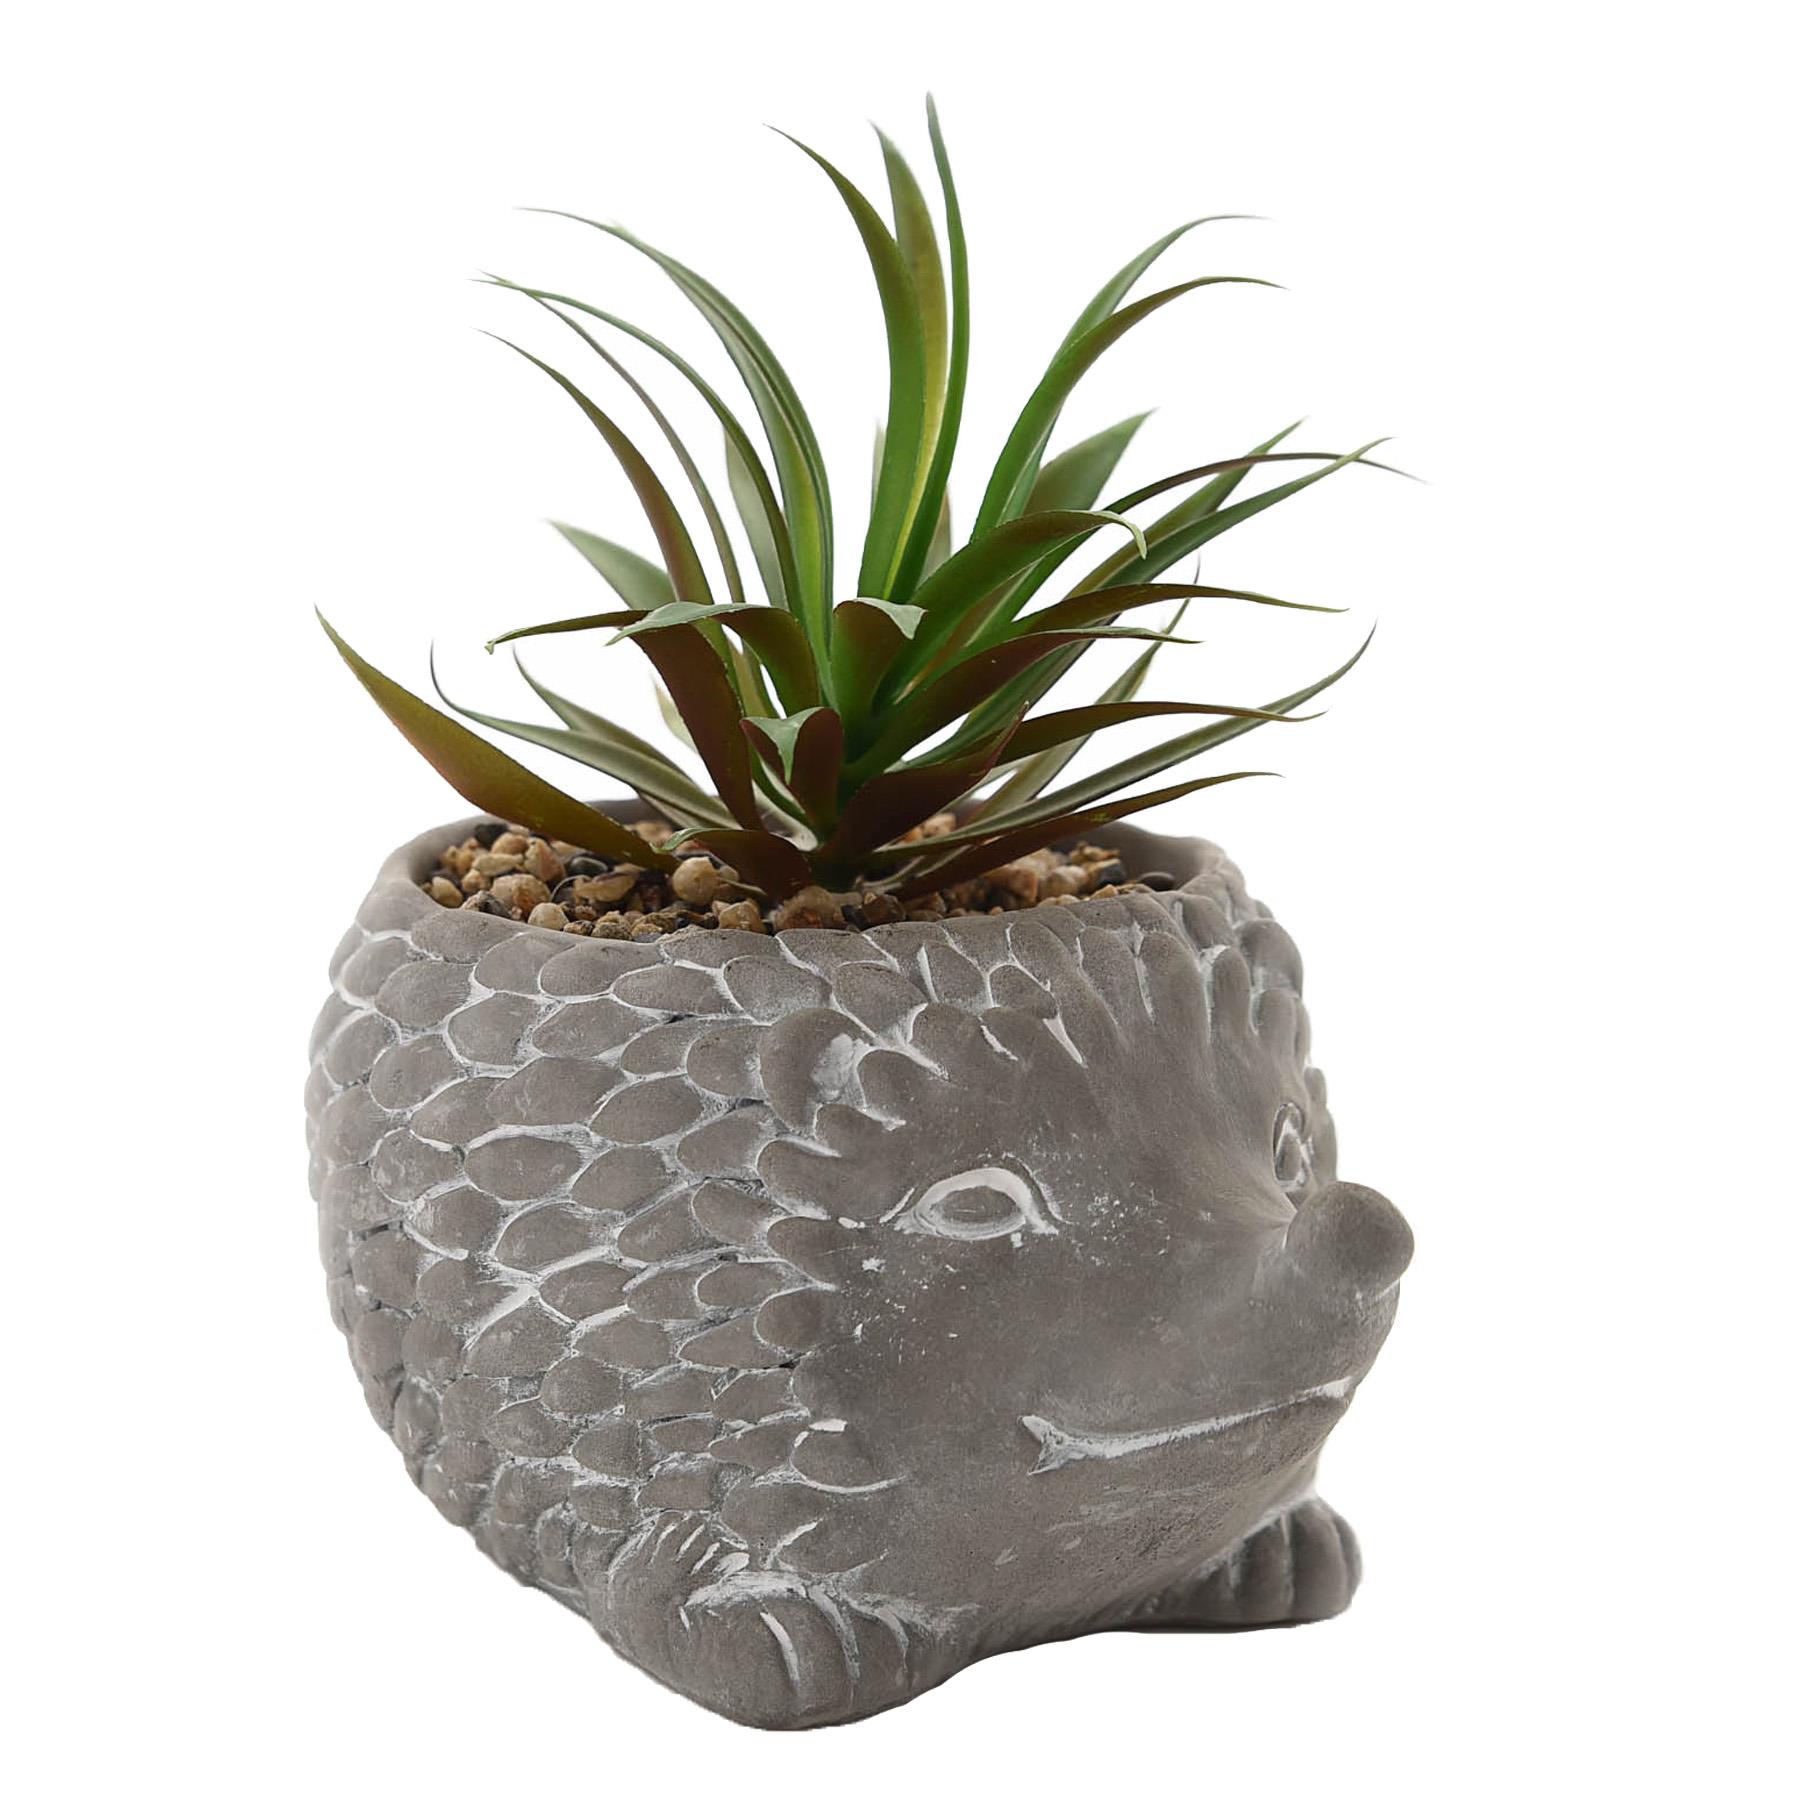 Mini Cement Effect Hedgehog Planter with Artificial Succulent Plant